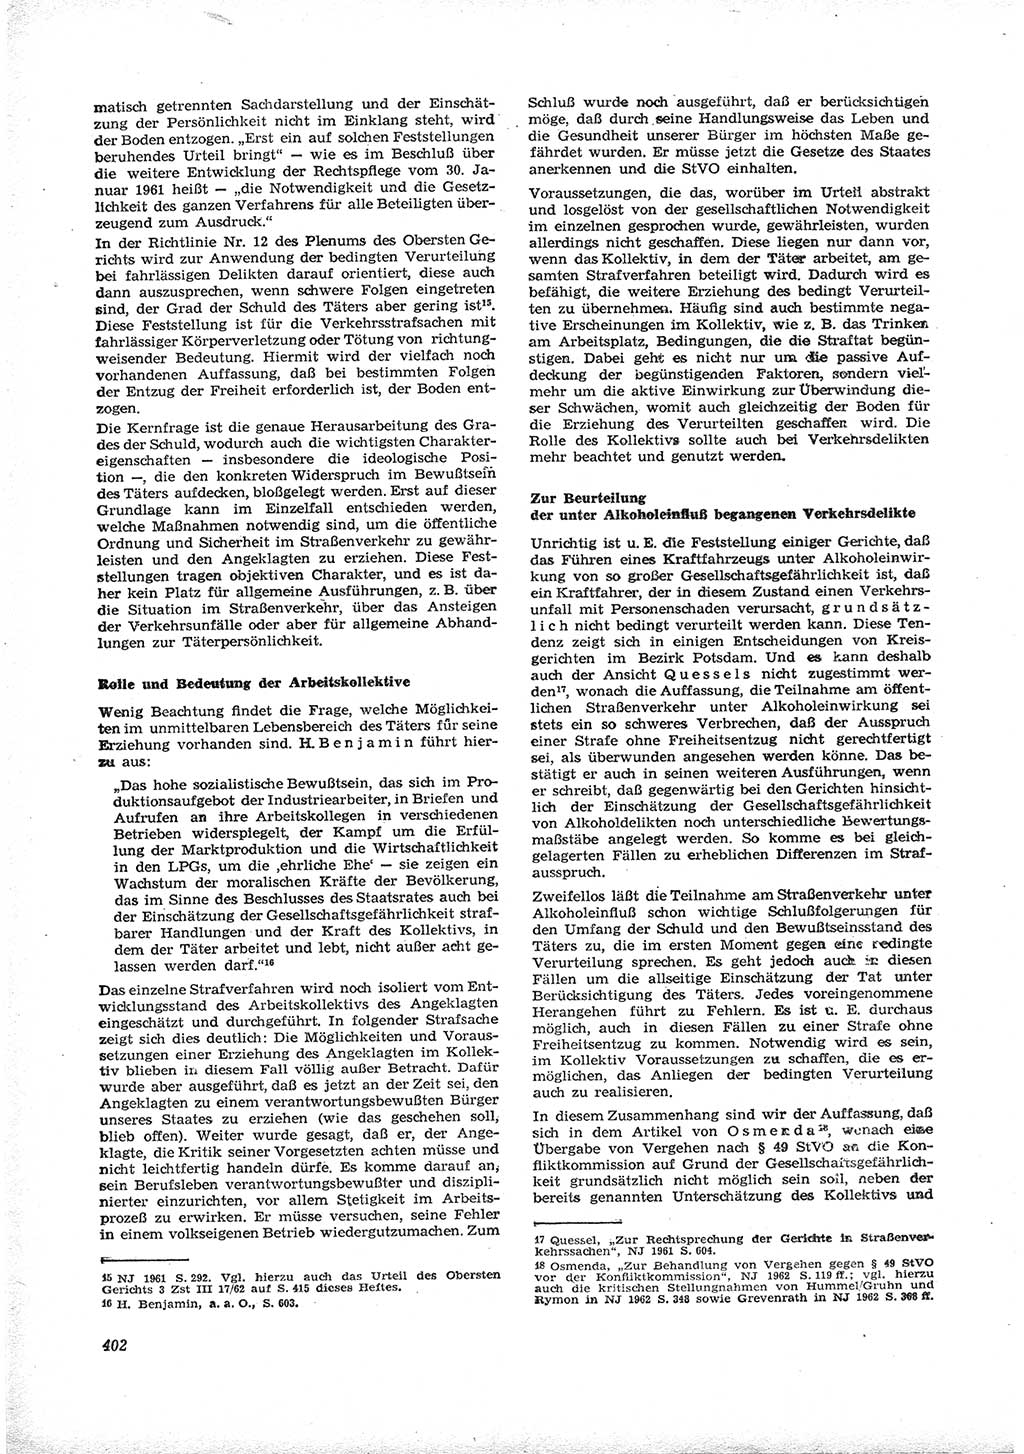 Neue Justiz (NJ), Zeitschrift für Recht und Rechtswissenschaft [Deutsche Demokratische Republik (DDR)], 16. Jahrgang 1962, Seite 402 (NJ DDR 1962, S. 402)